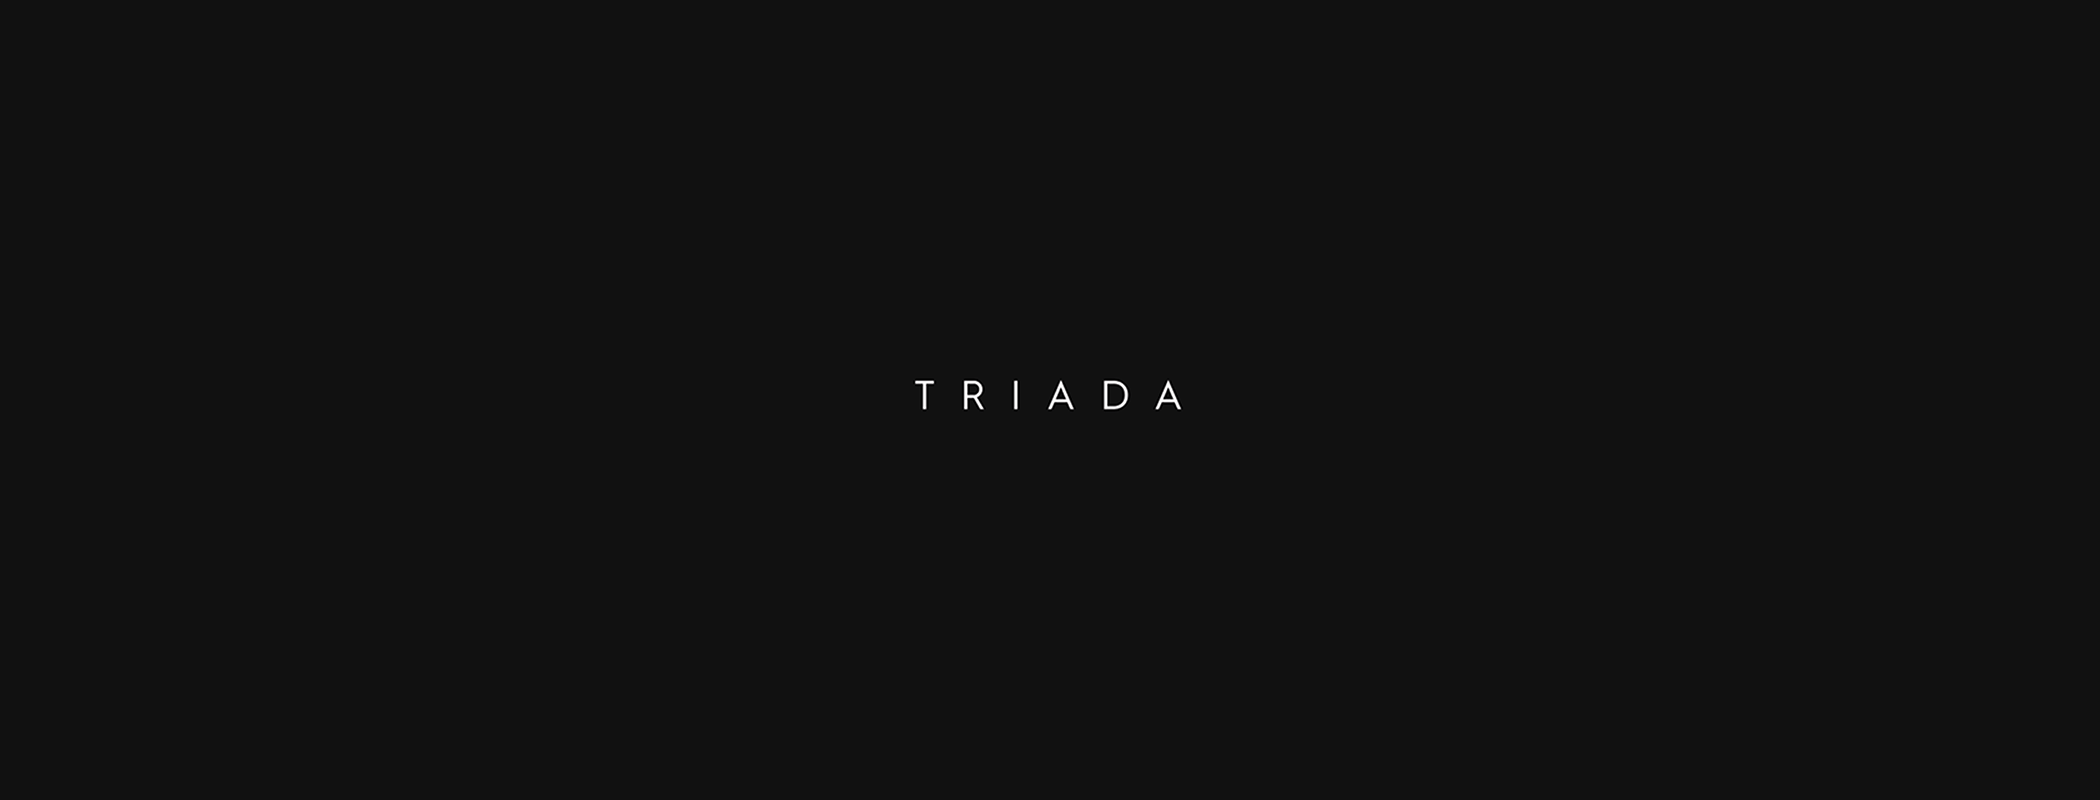 triada-02_0